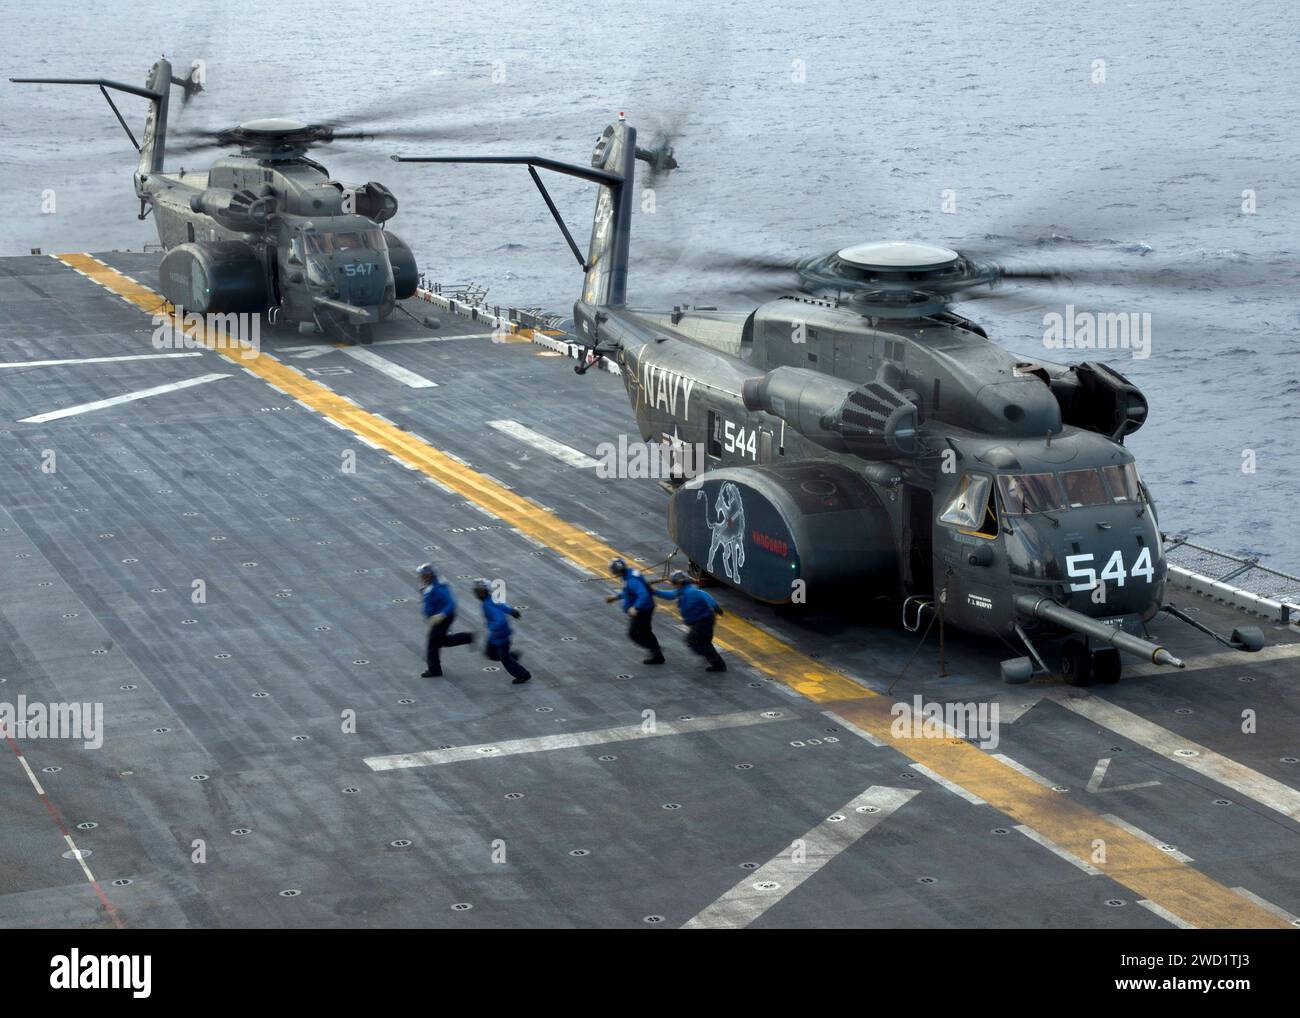 Die Matrosen laufen auf die Foul-Linie zu, nachdem sie mit zwei MH-53E Sea Dragon Helikoptern eine Keil- und Kettenentwicklung beendet haben. Stockfoto